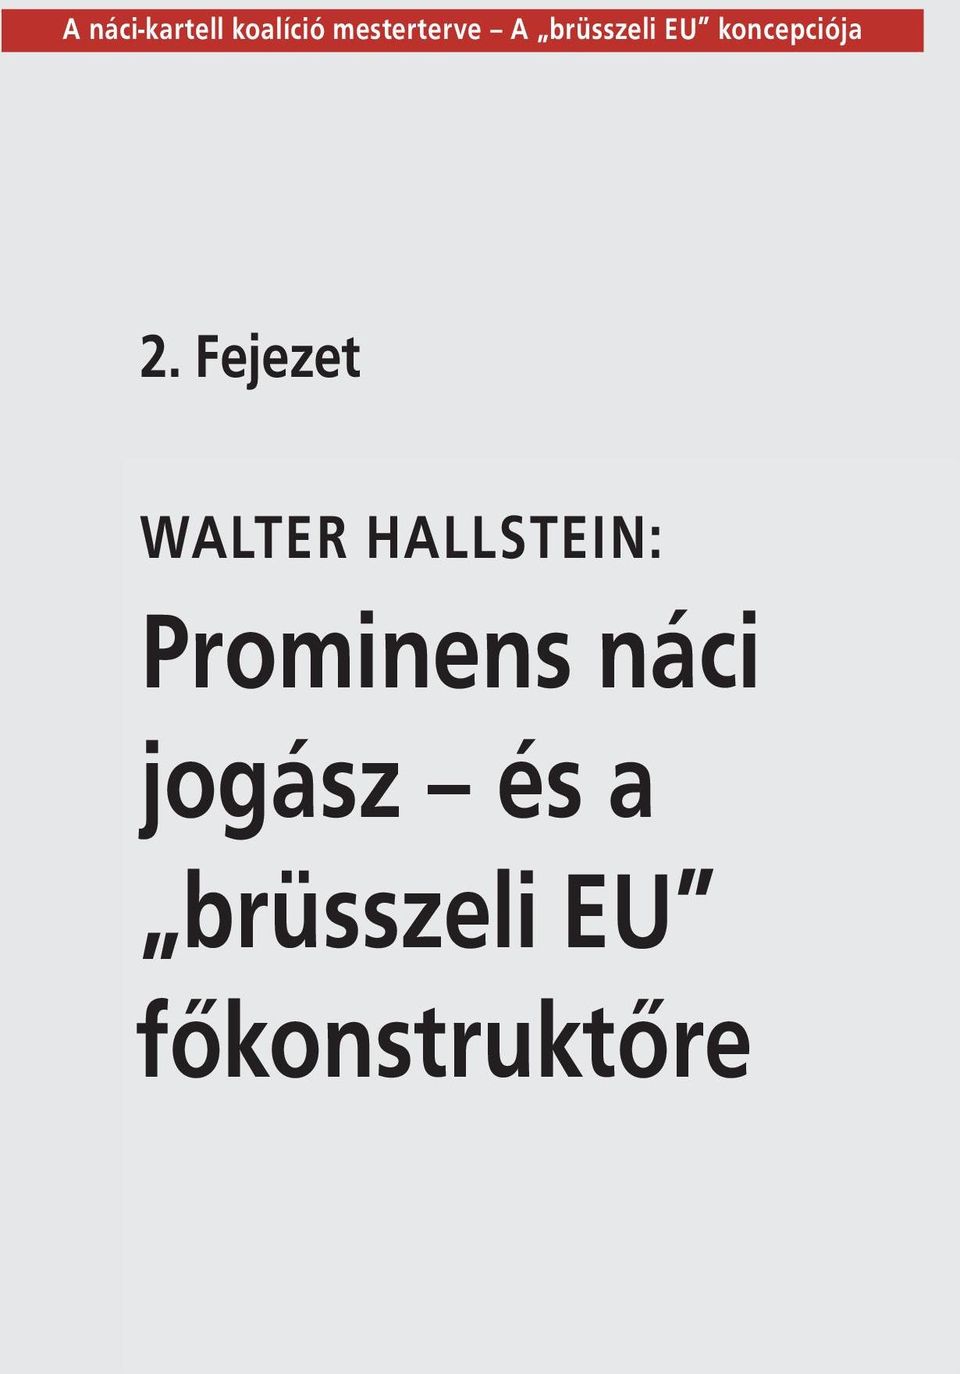 Fejezet WALTER HALLSTEIN: Prominens